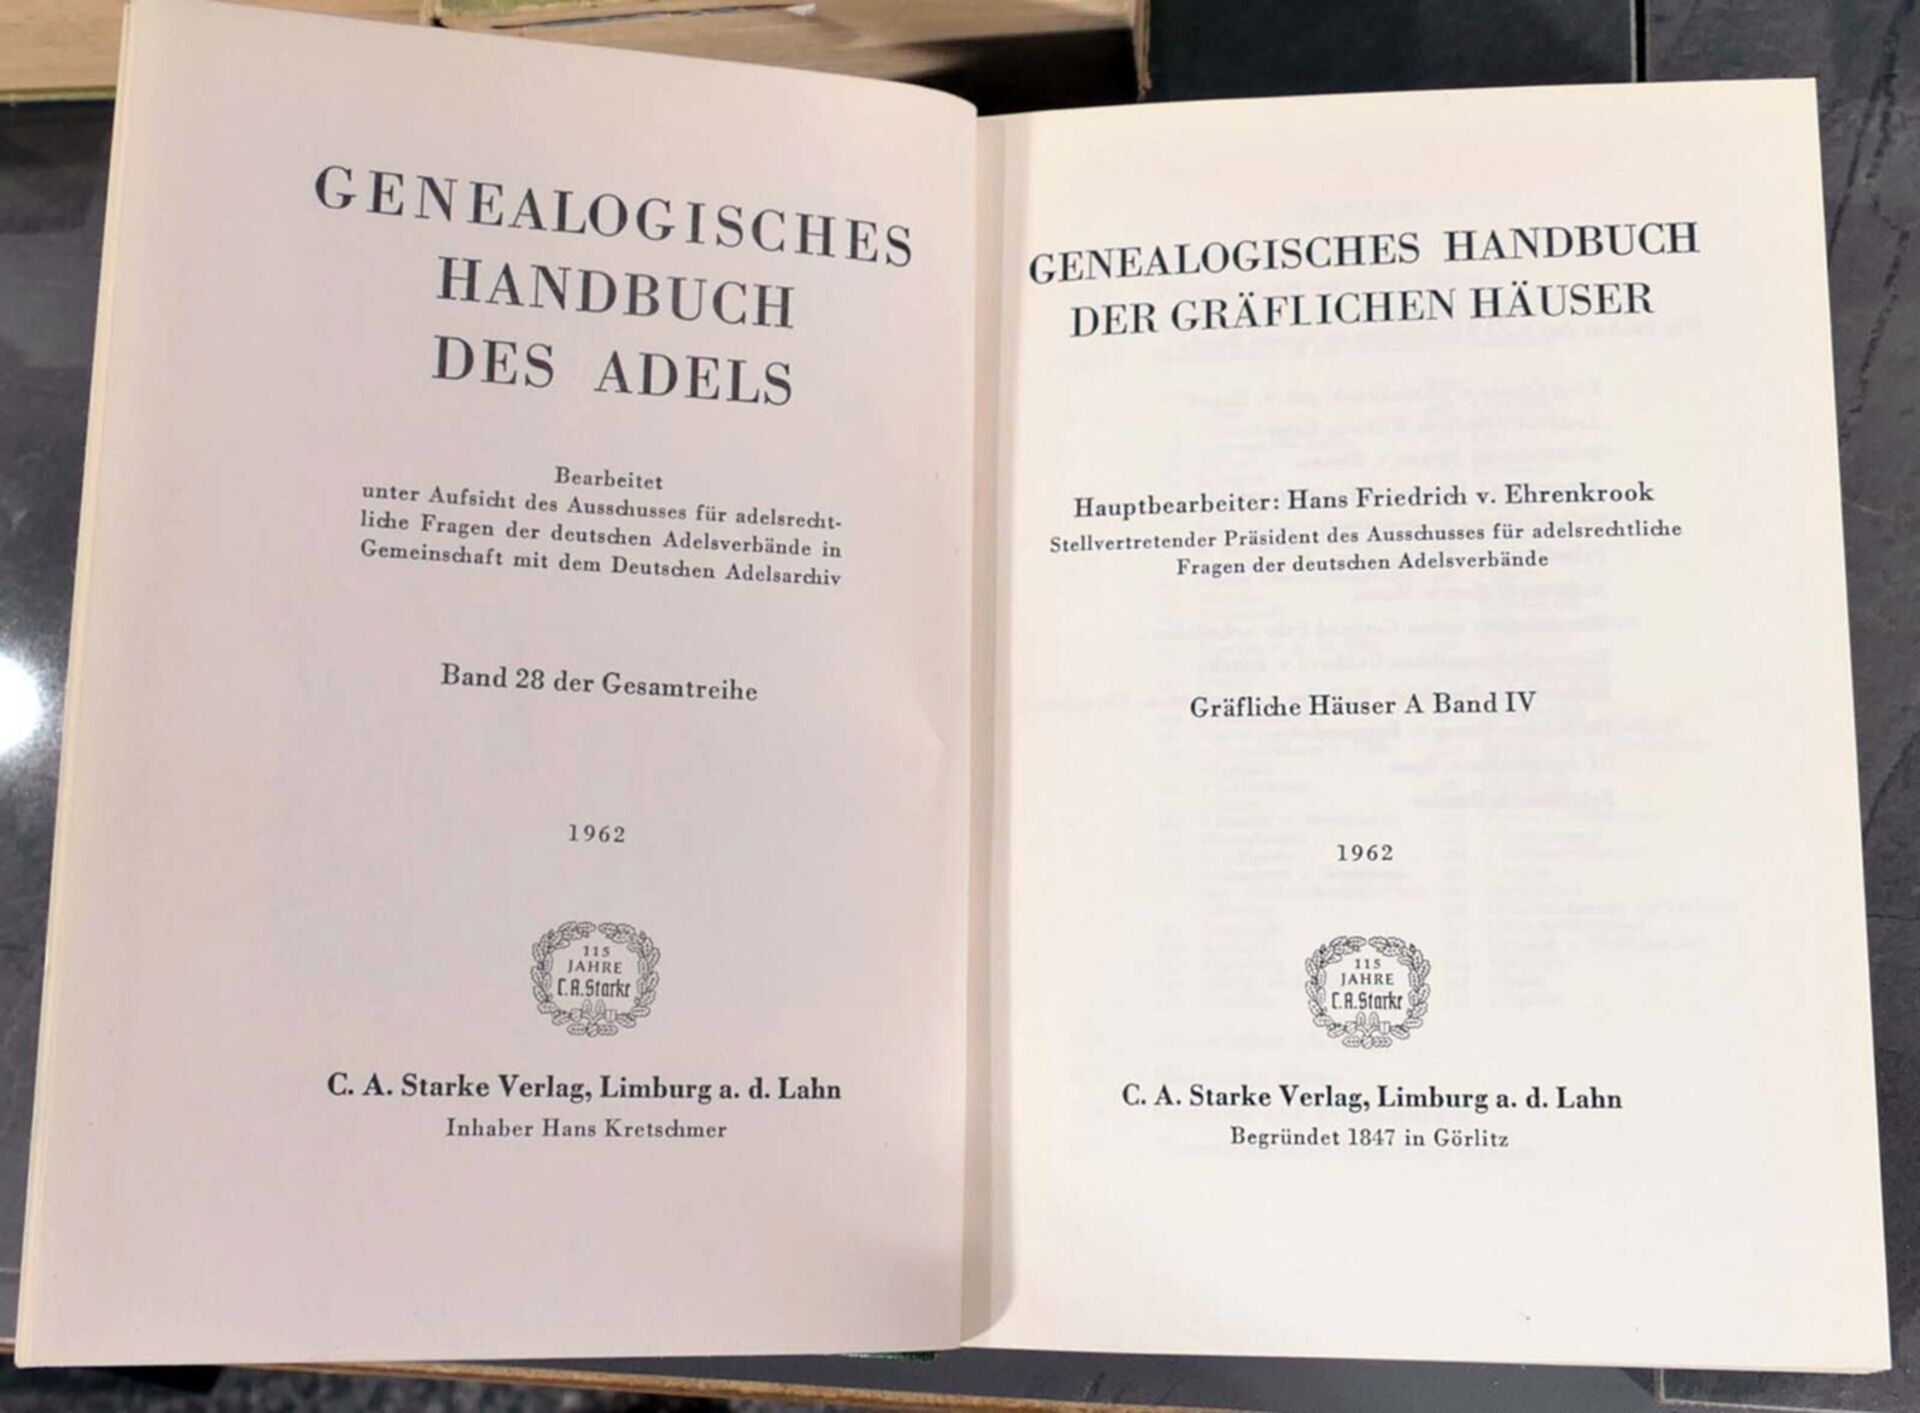 34 tlg. Sammlung versch. Genealogischer Handbücher des Adels des 19. & 20. Jhd., versch. Alter, For - Bild 8 aus 9